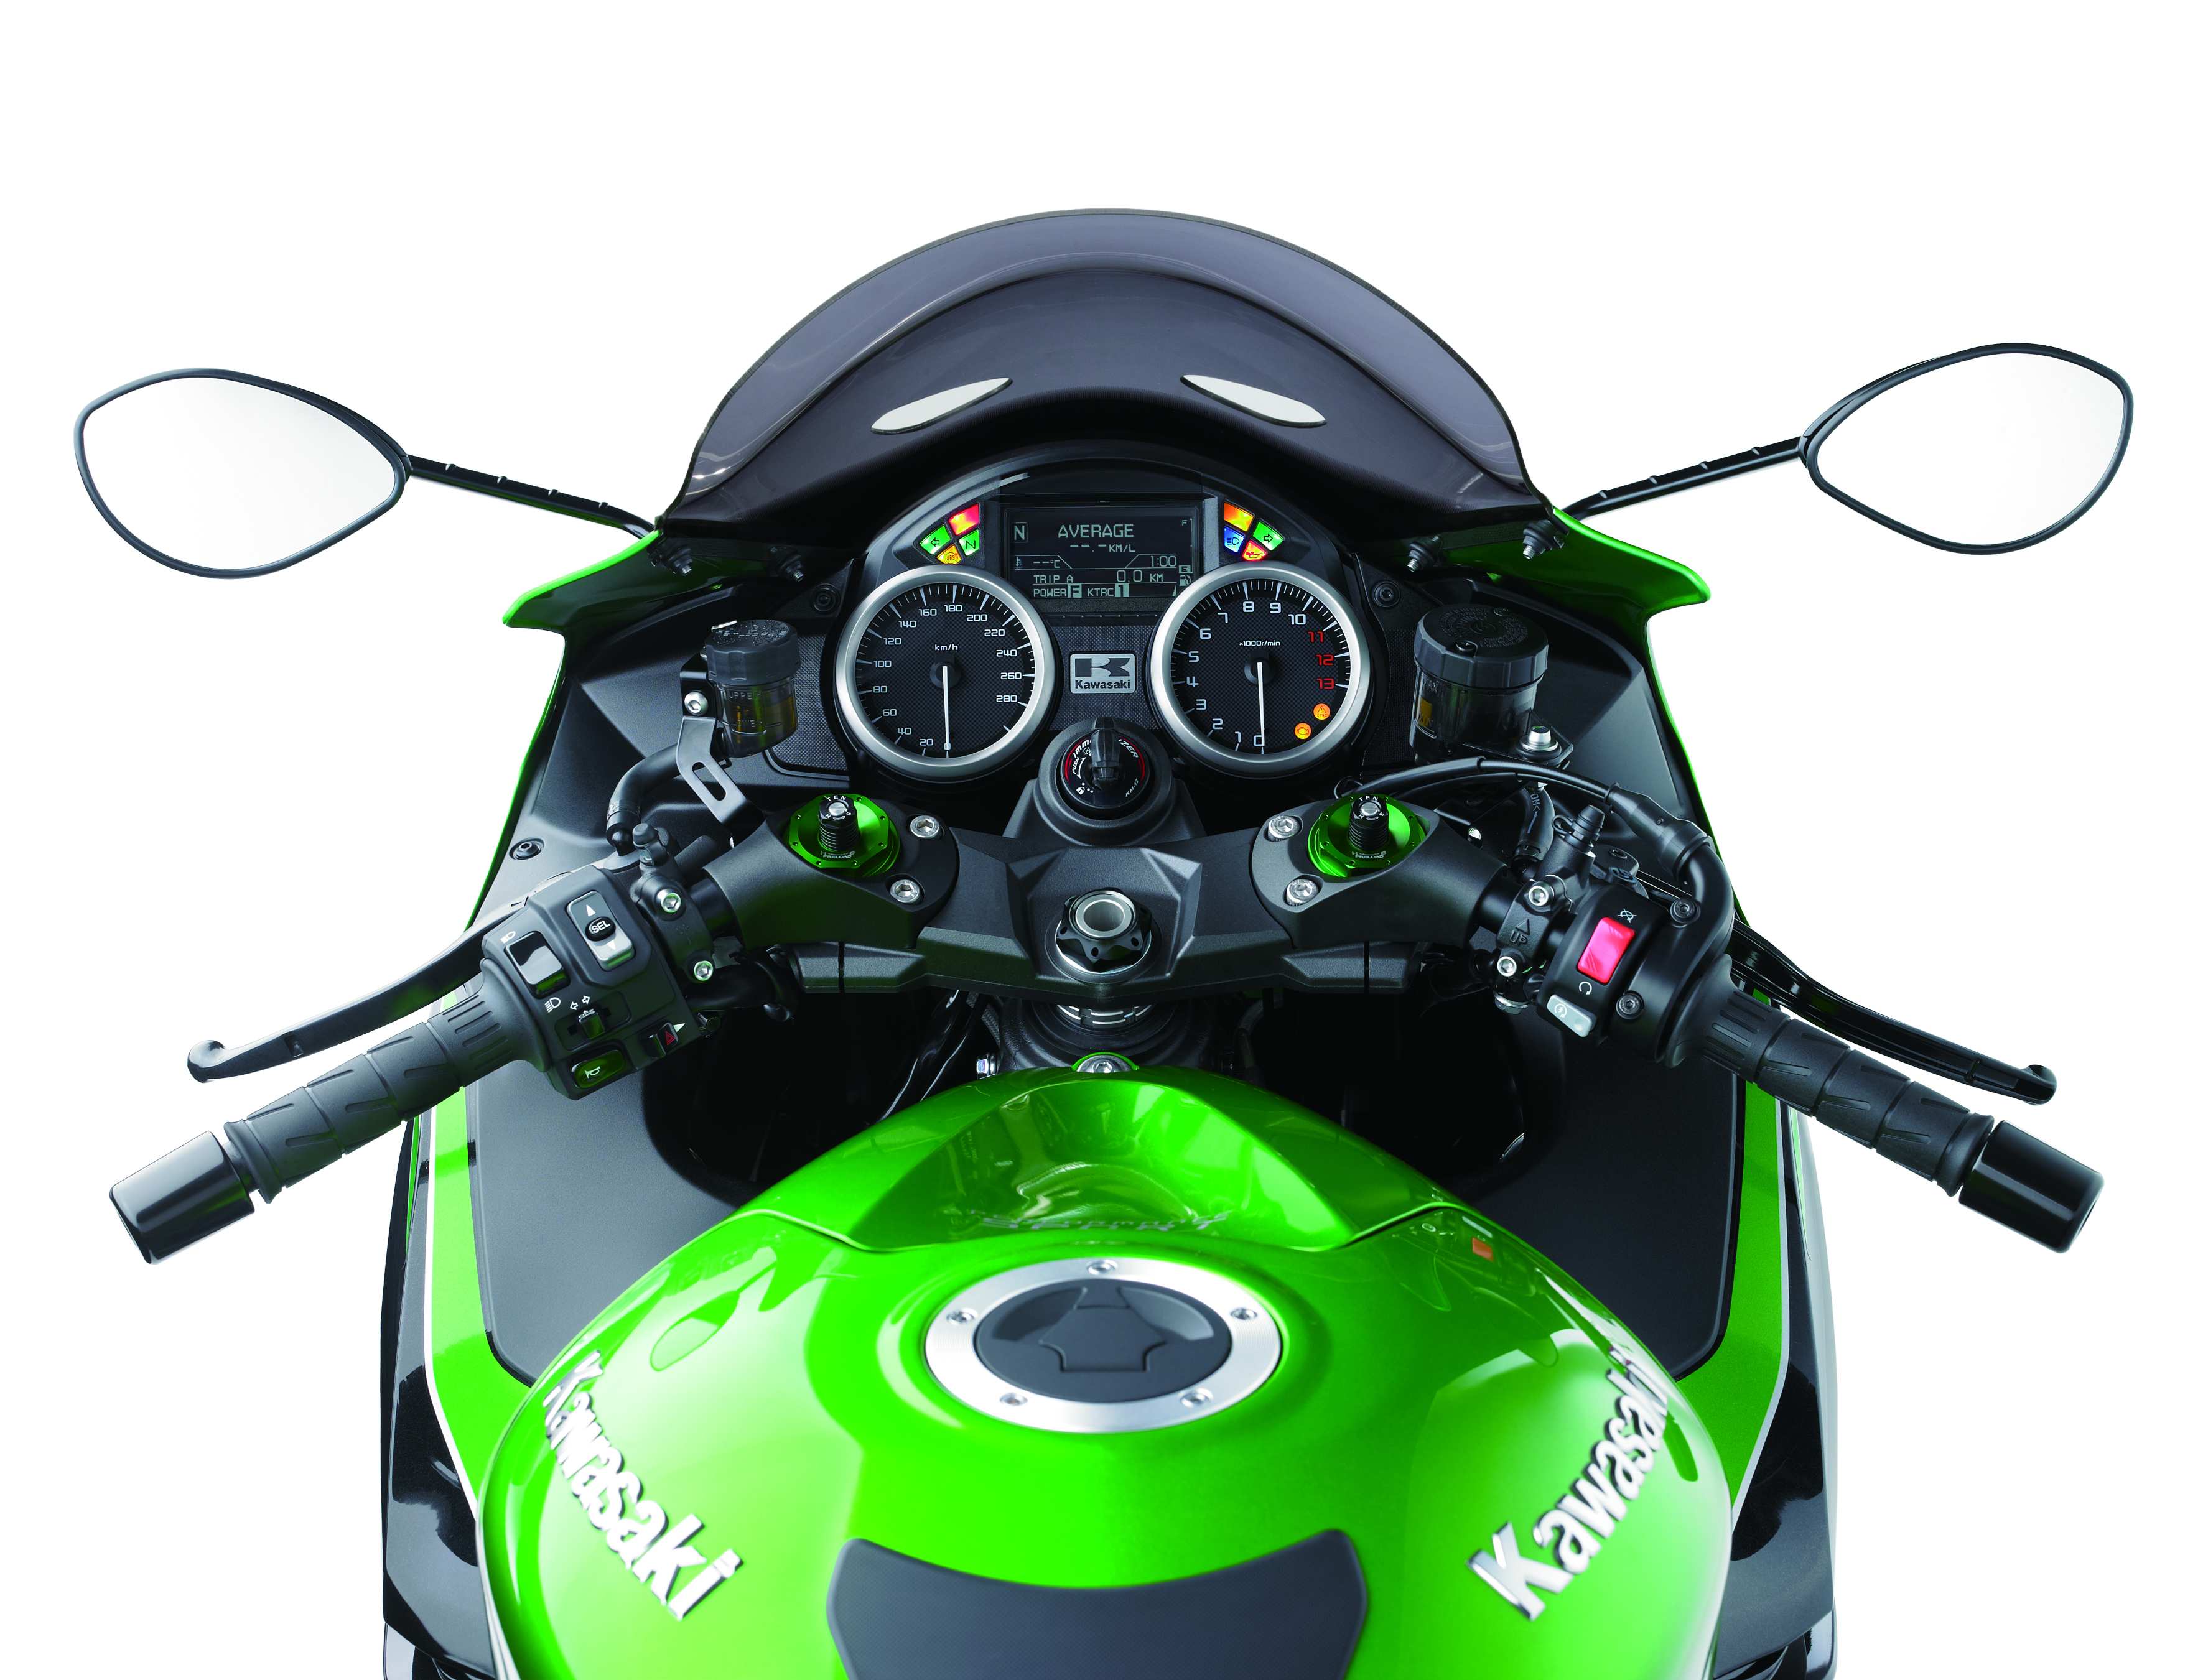 2016 Kawasaki ZZR1400 revealed